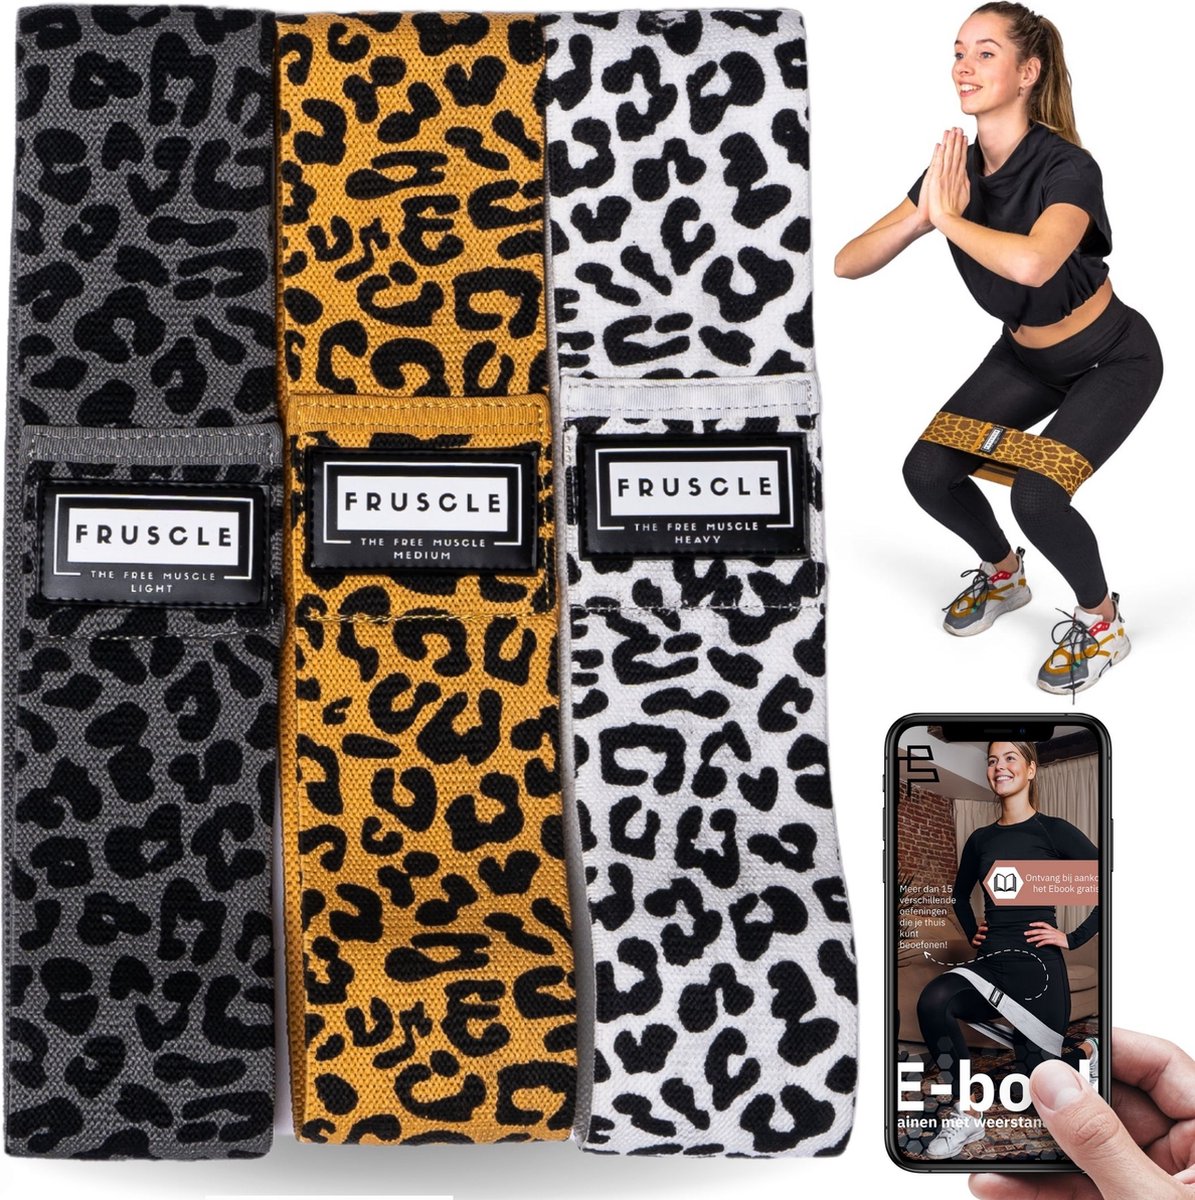 Fruscle® Weerstandsbanden set - Panter - Benen en billen trainen - fitness elastiek yoga crossfit - met ebook en opbergtas